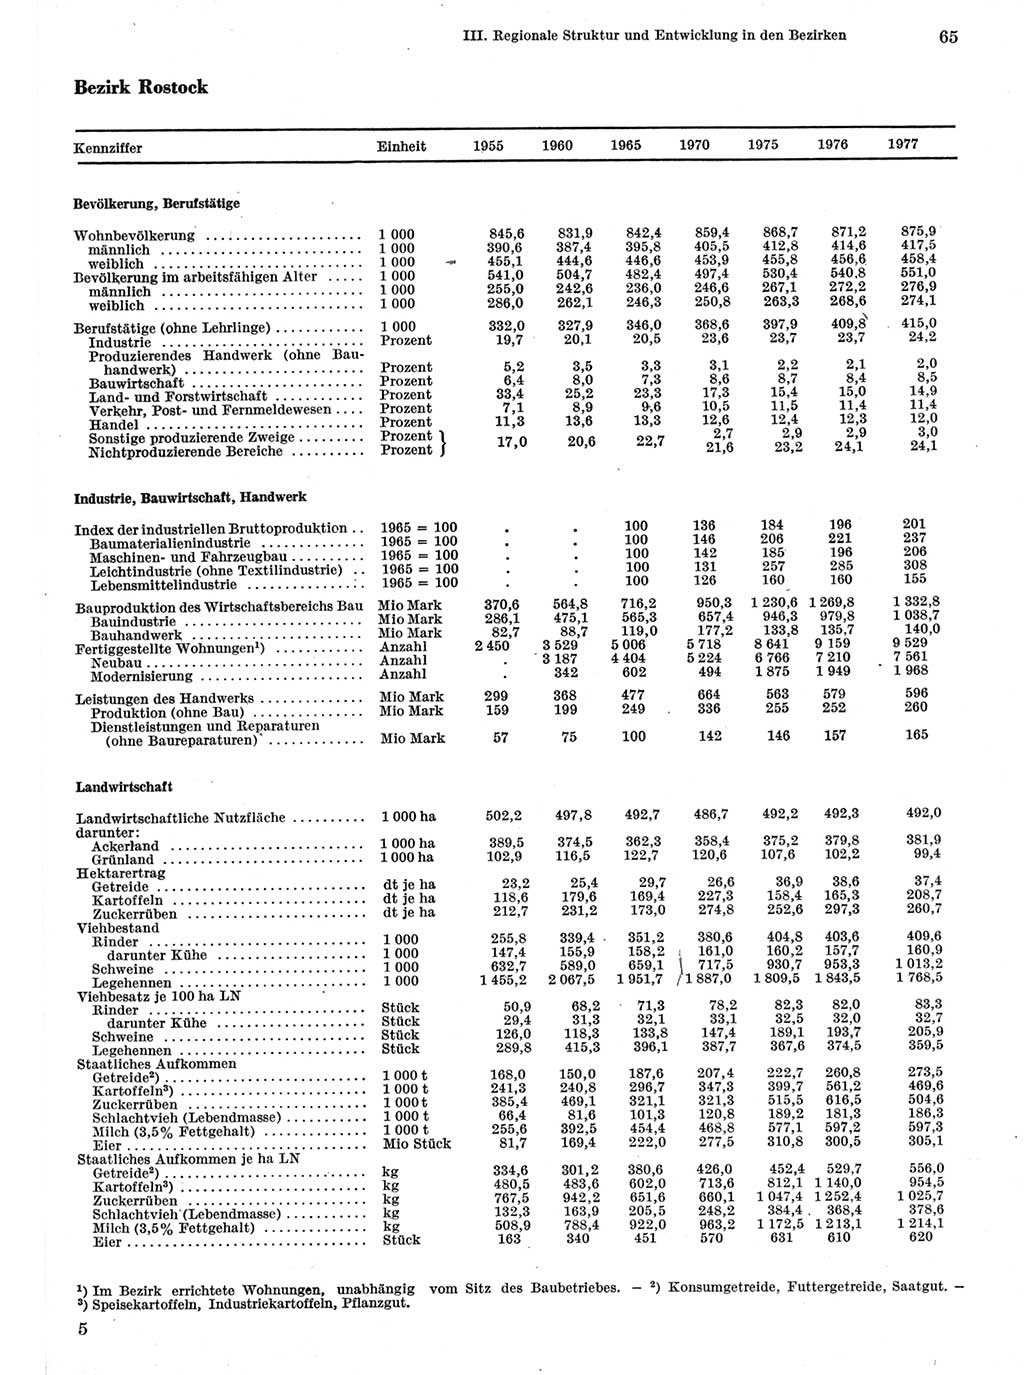 Statistisches Jahrbuch der Deutschen Demokratischen Republik (DDR) 1978, Seite 65 (Stat. Jb. DDR 1978, S. 65)